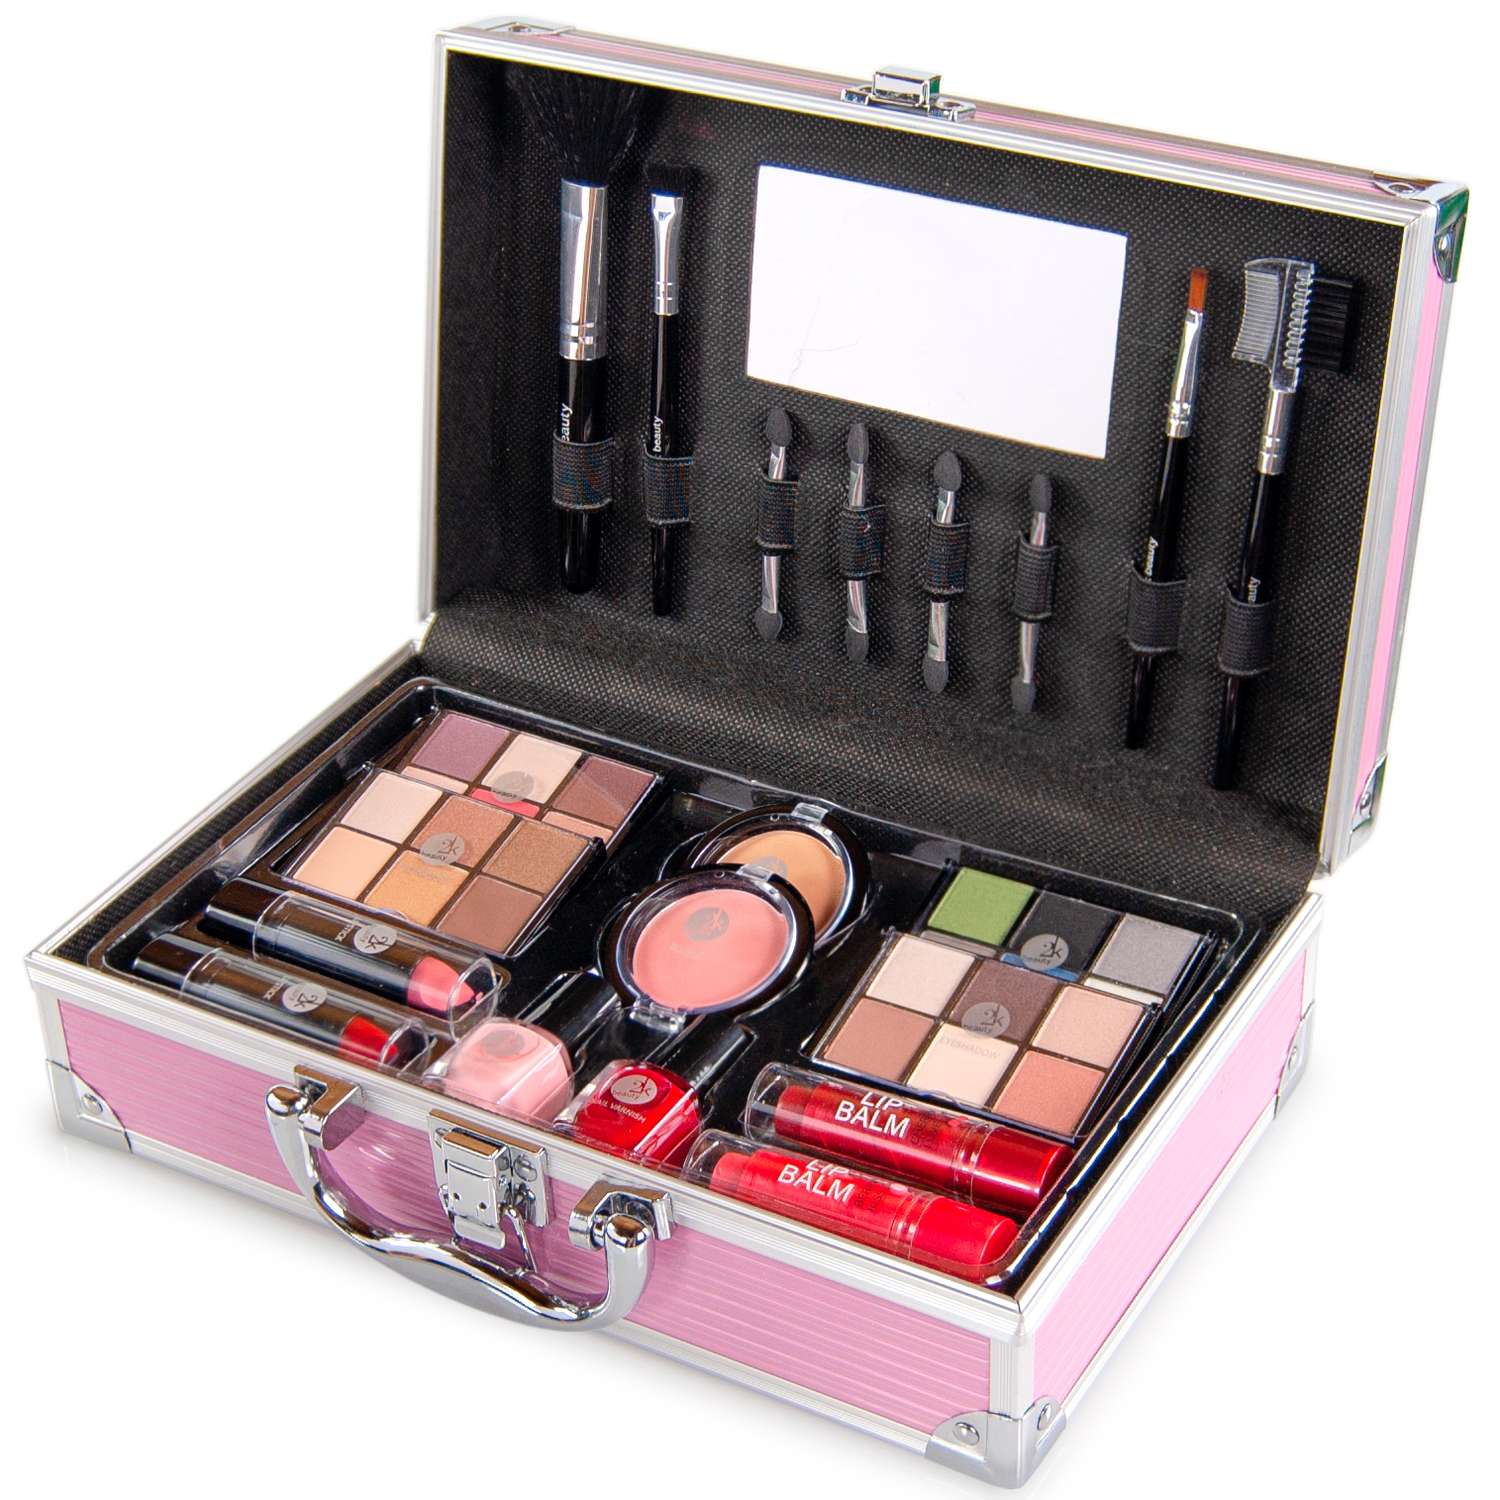 Подарочный бьют кейс чемодан 2K Beauty Косметический набор с декоративной косметикой для макияжа лица и маникюра - фото 1